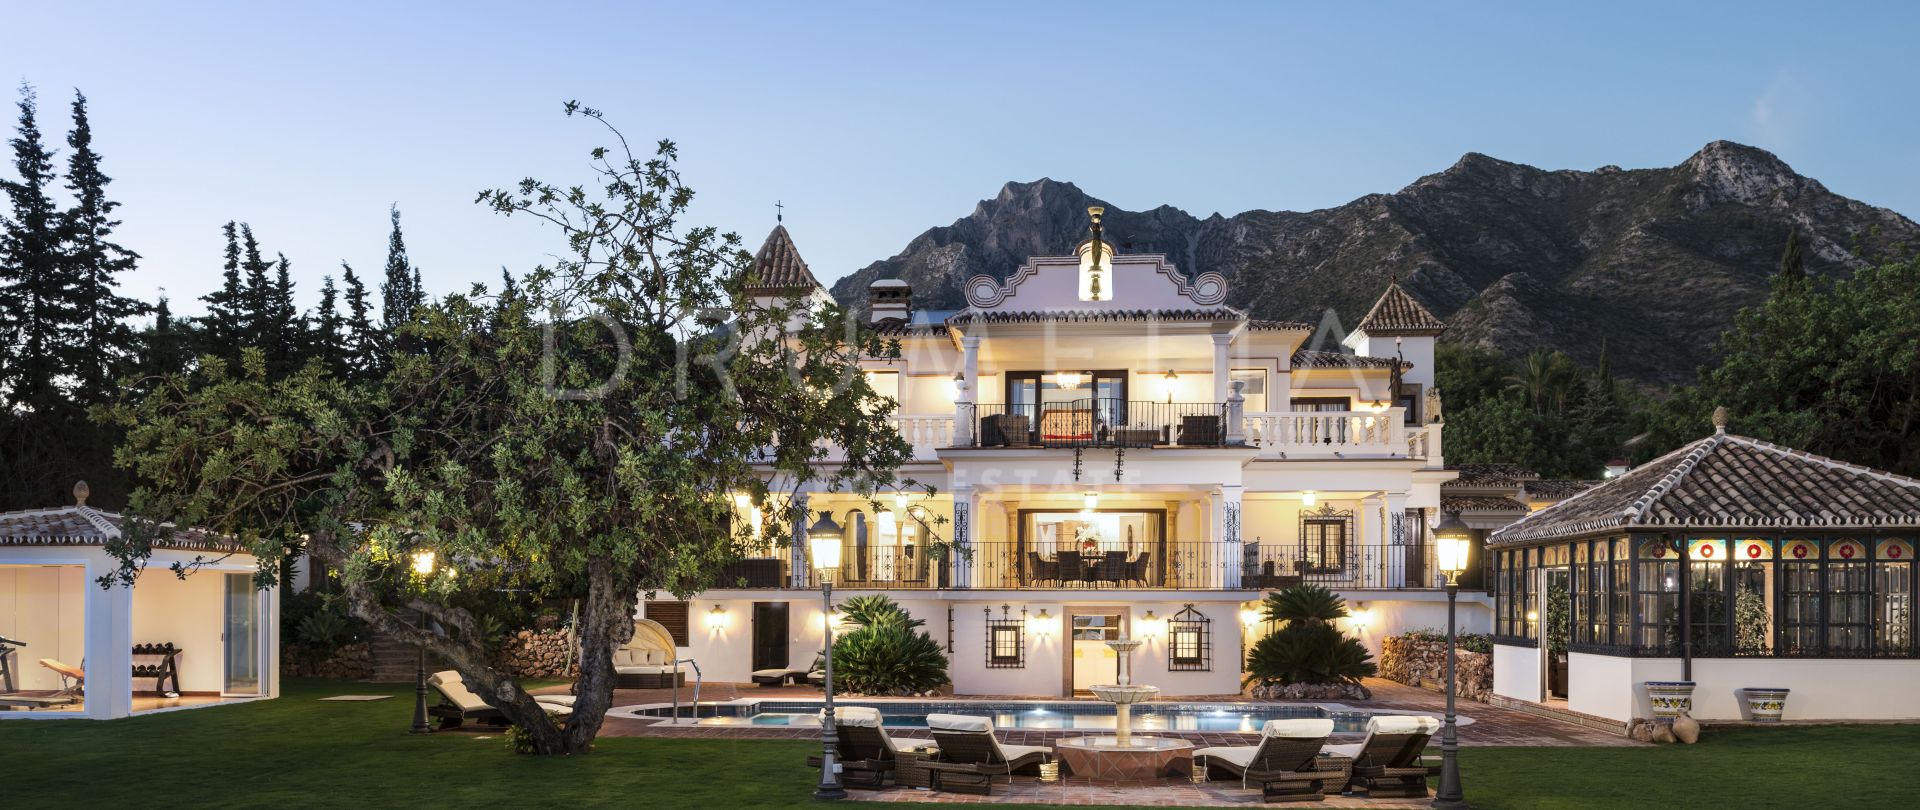 Buitengewoon luxe herenhuis dat toekomst en verleden combineert, Sierra Blanca, Marbella